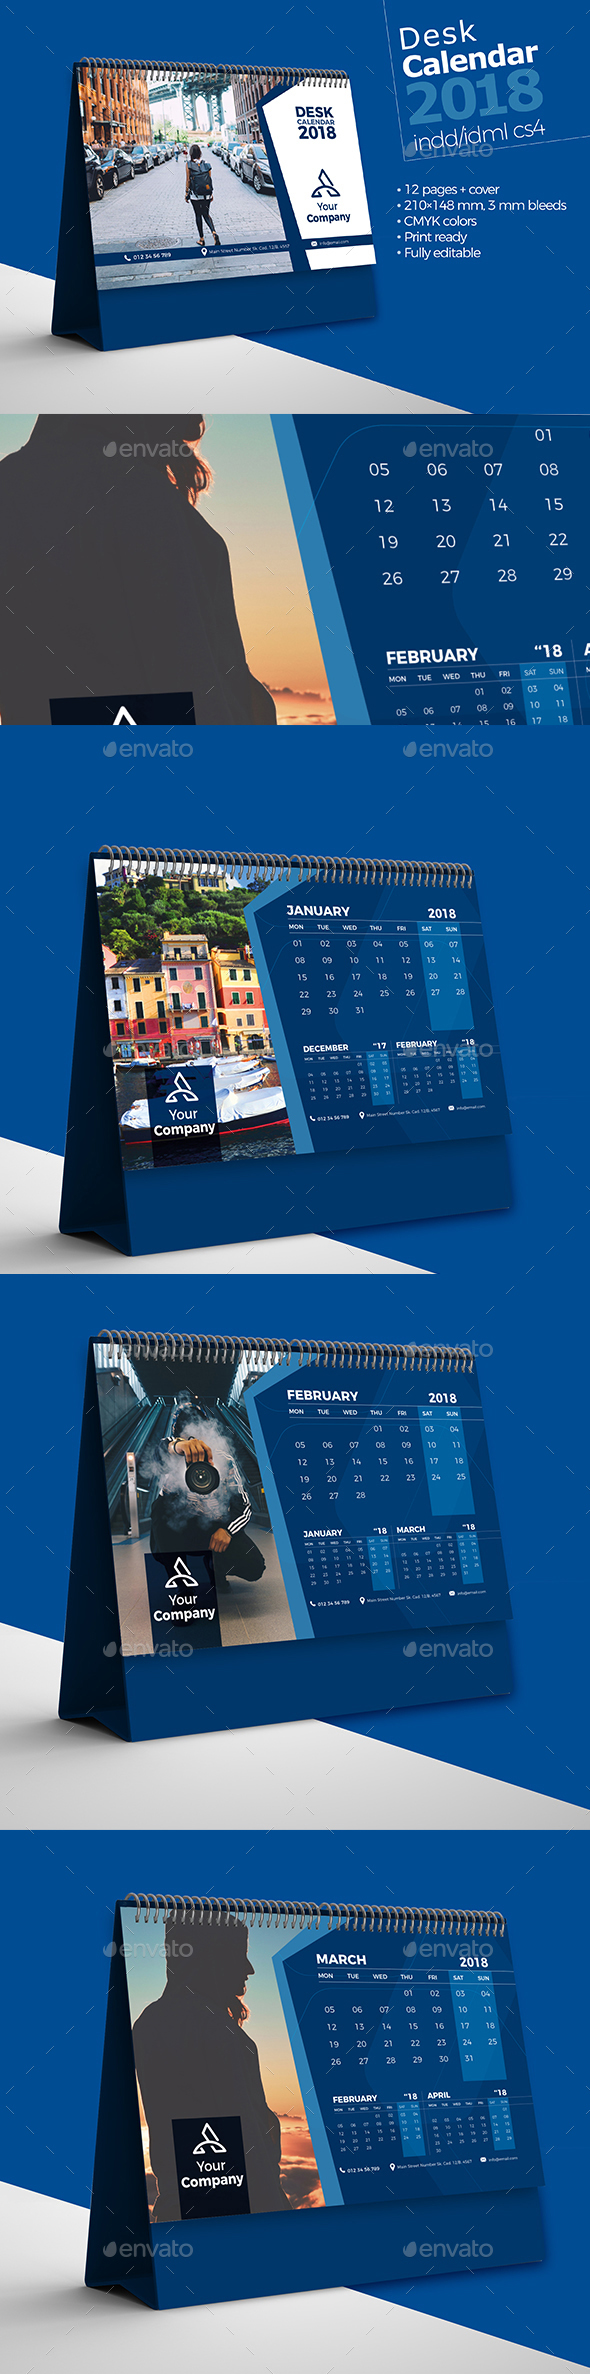 Desk Calendar 2018 Bundle V2